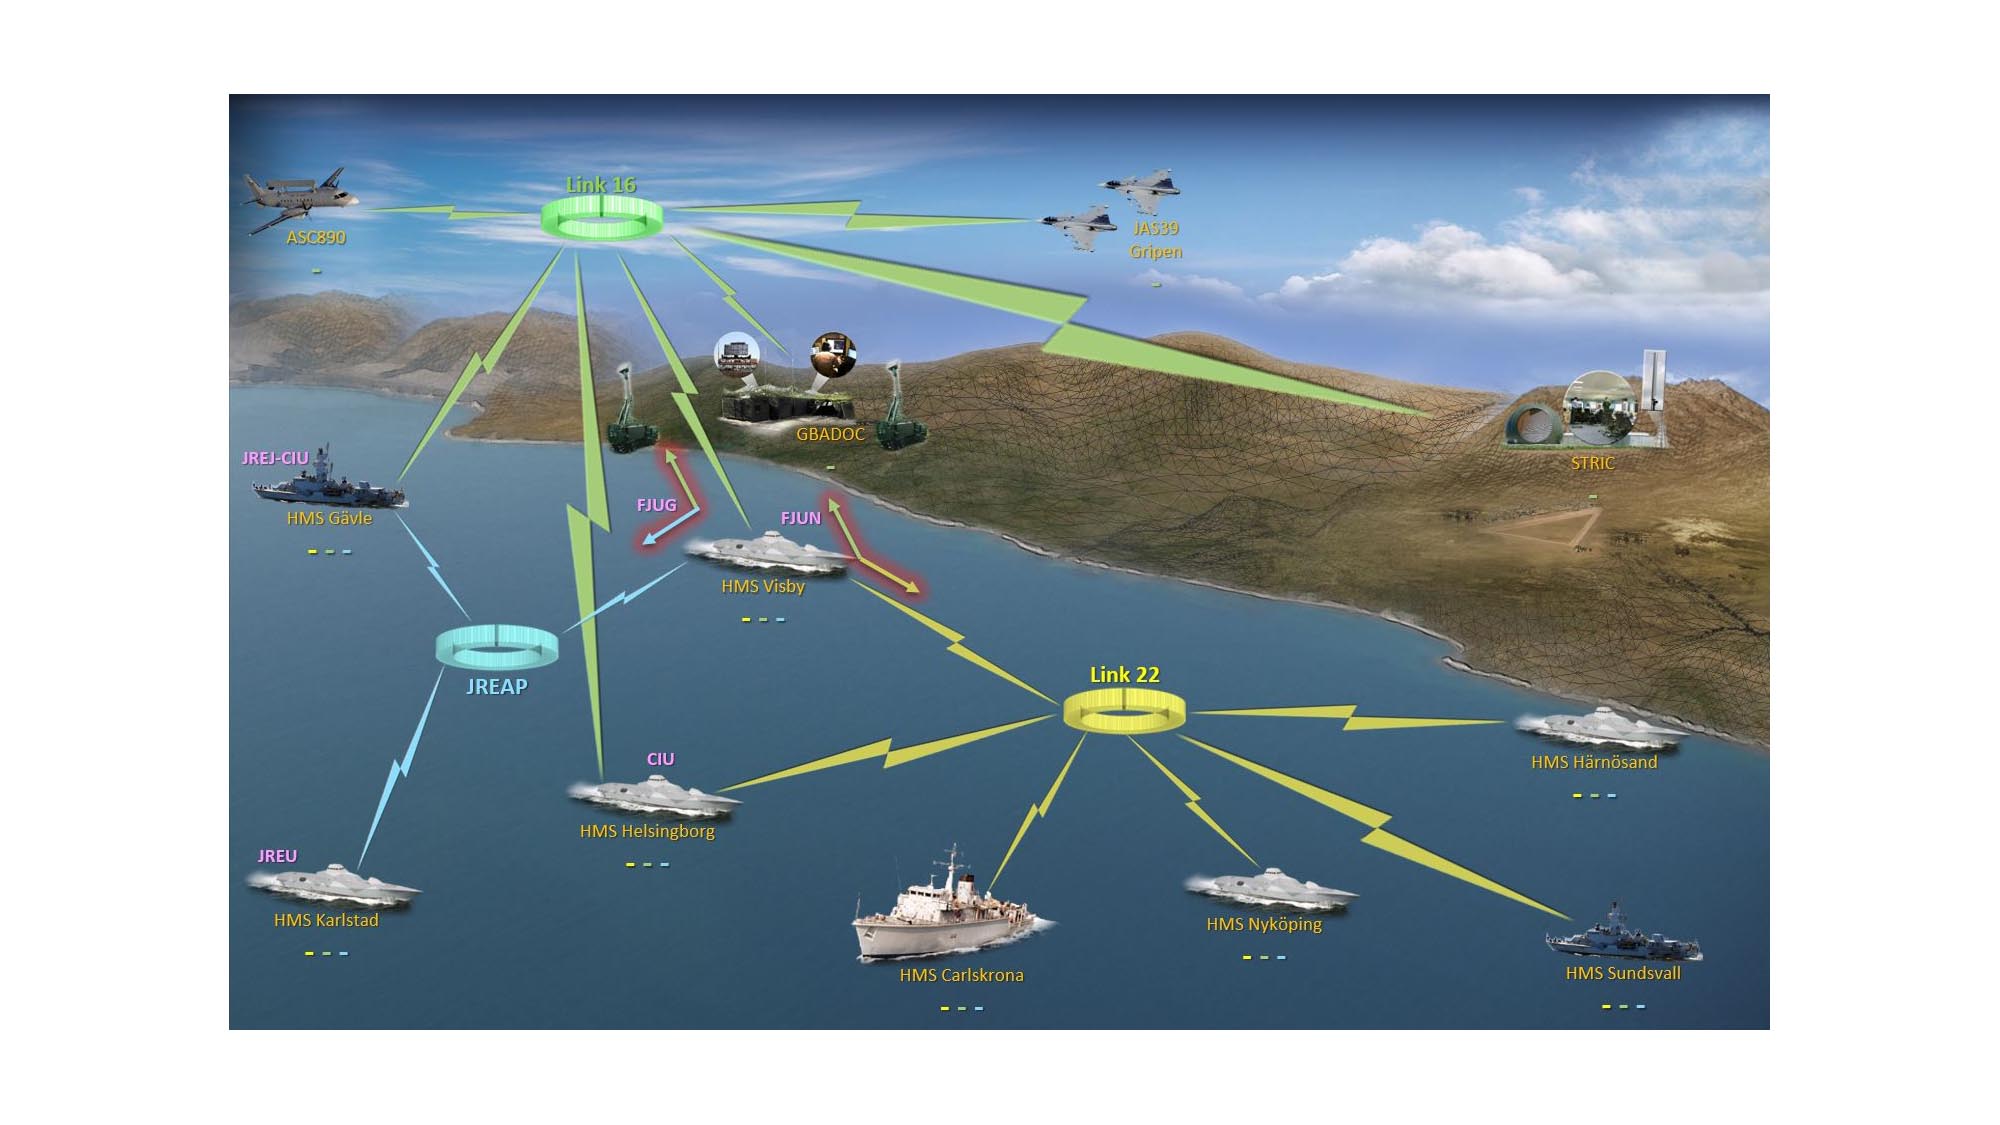 Länk 22 är ett protokoll för säker radiokommunikation på långa avstånd inom Nato. Systemet binder via radiokommunikation samman enheter inom flyg, ytfartyg, ubåtar och markbaserade taktiska datasystem. Det används för att utbyta taktiska data mellan militära enheter från deltagande nationer.